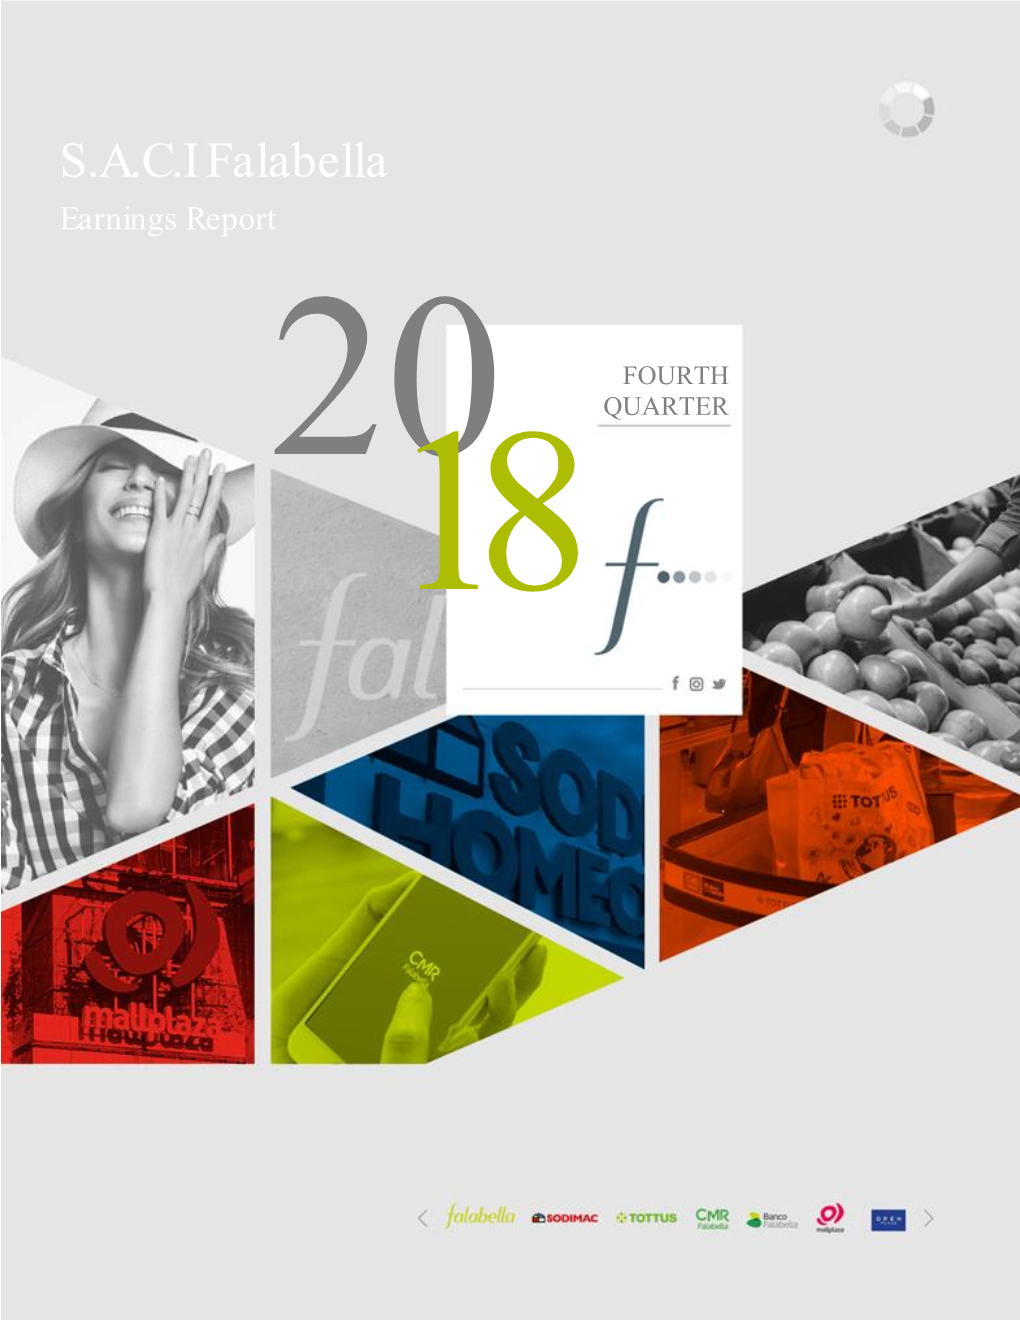 SACI Falabella Earnings Report